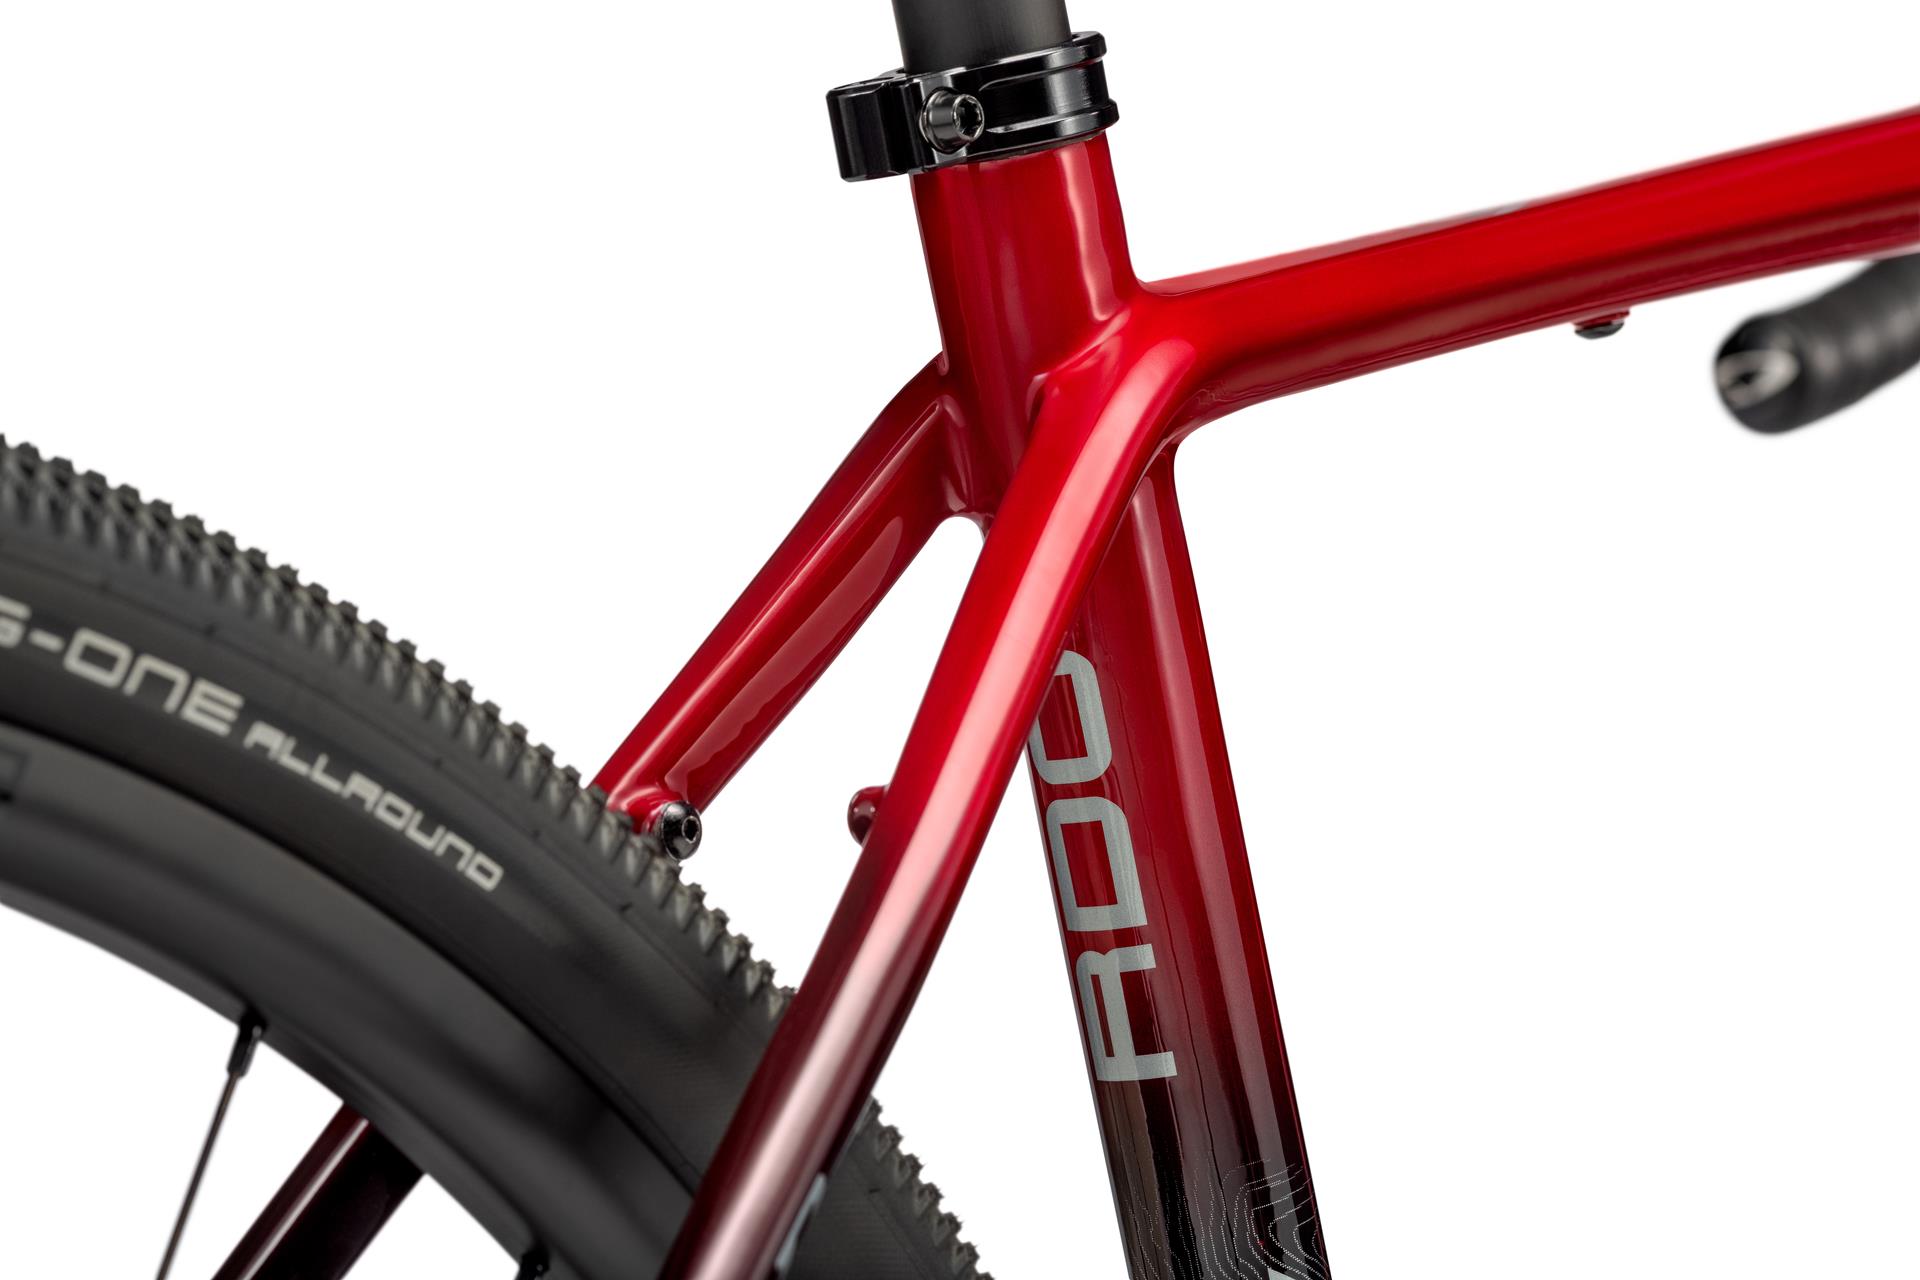 Niner RLT RDO 2-star велосипед, кроваво-красный, 59